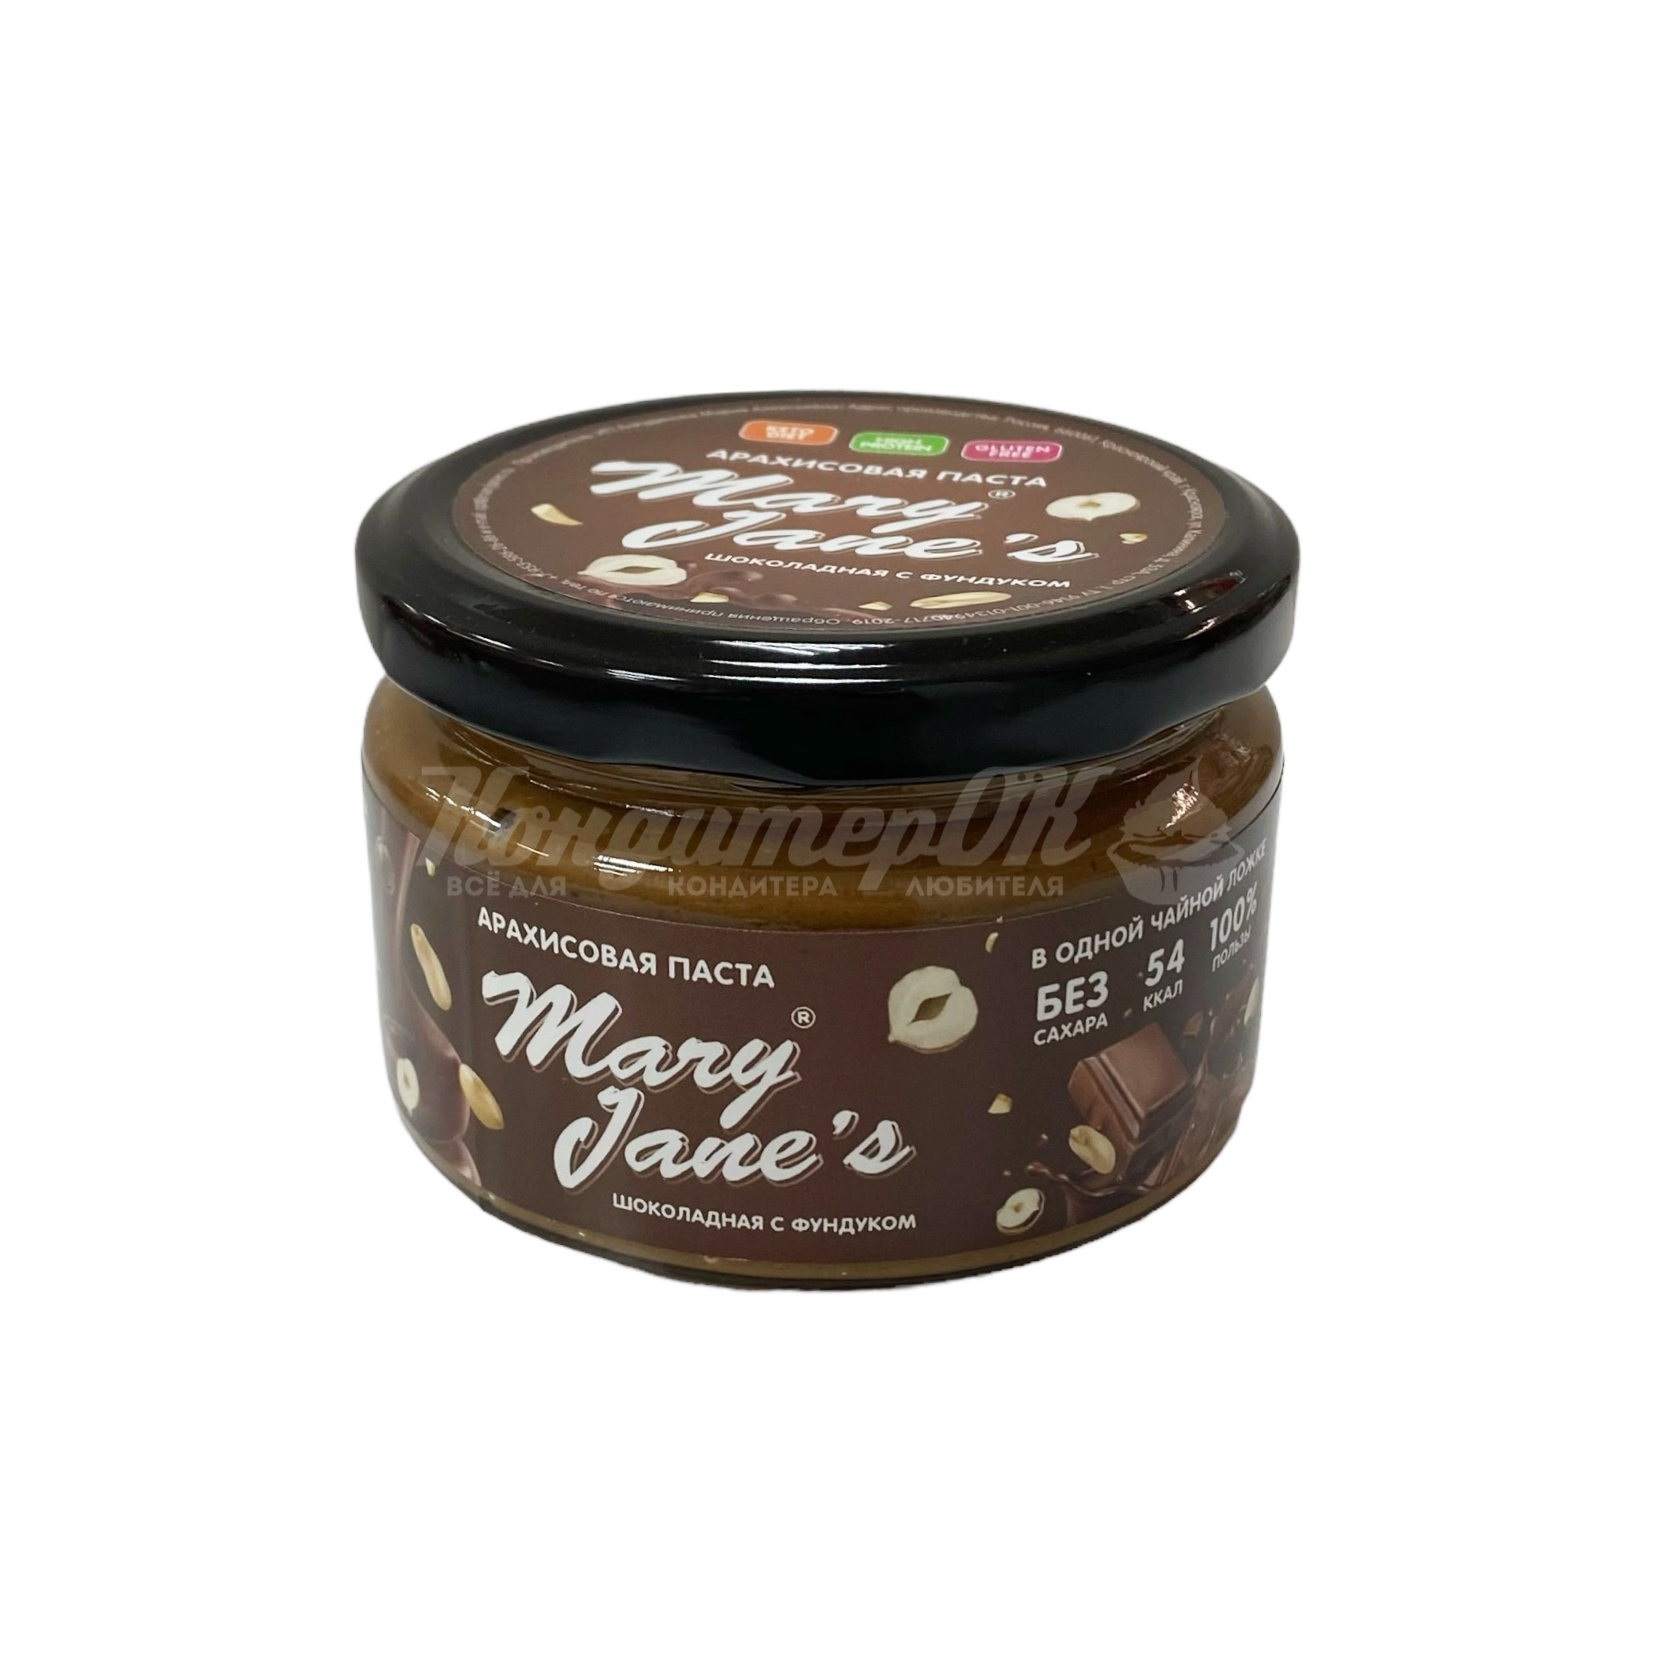 Паста арахисовая Mary Jane's шоколадная с фундуком 200 г